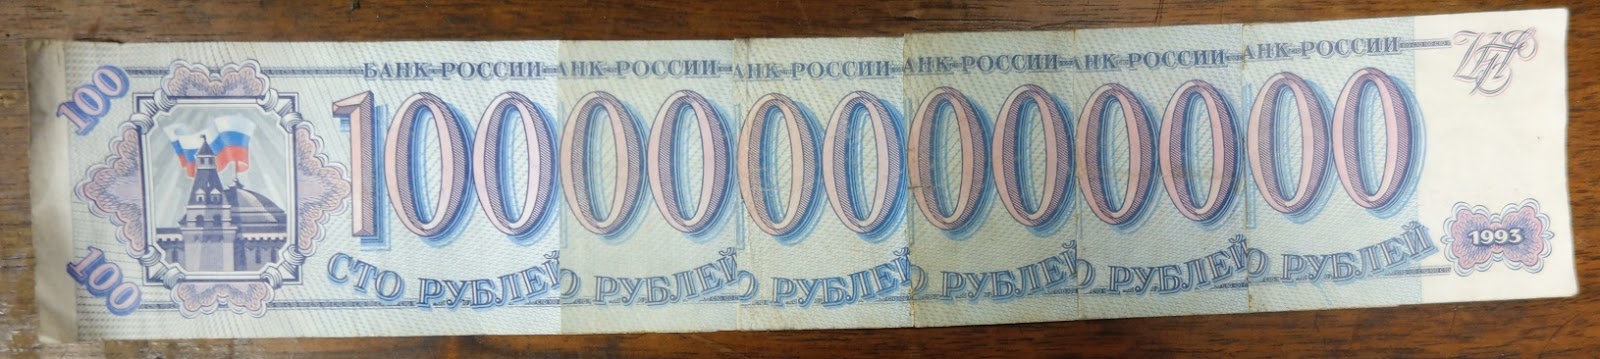 Как выглядела купюра миллион рублей